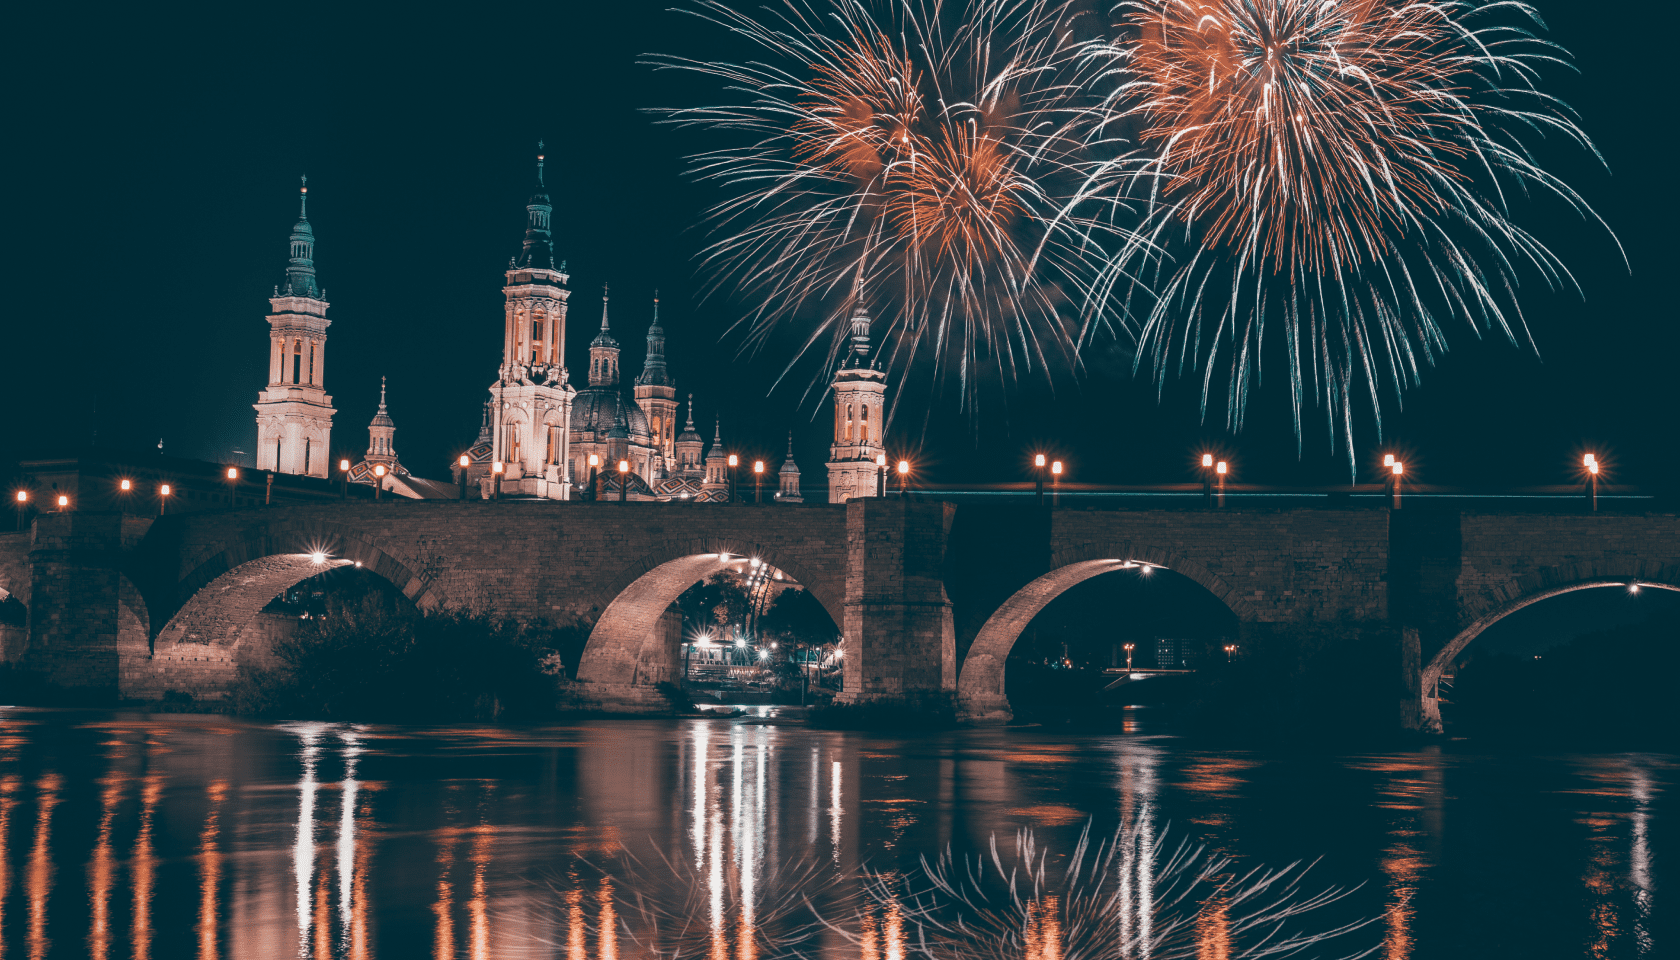 El Puente de Piedra y la Basílica de Nuestra Señora del Pilar de Zaragoza iluminados por fuegos artificiales que se reflejan en el río Ebro de noche